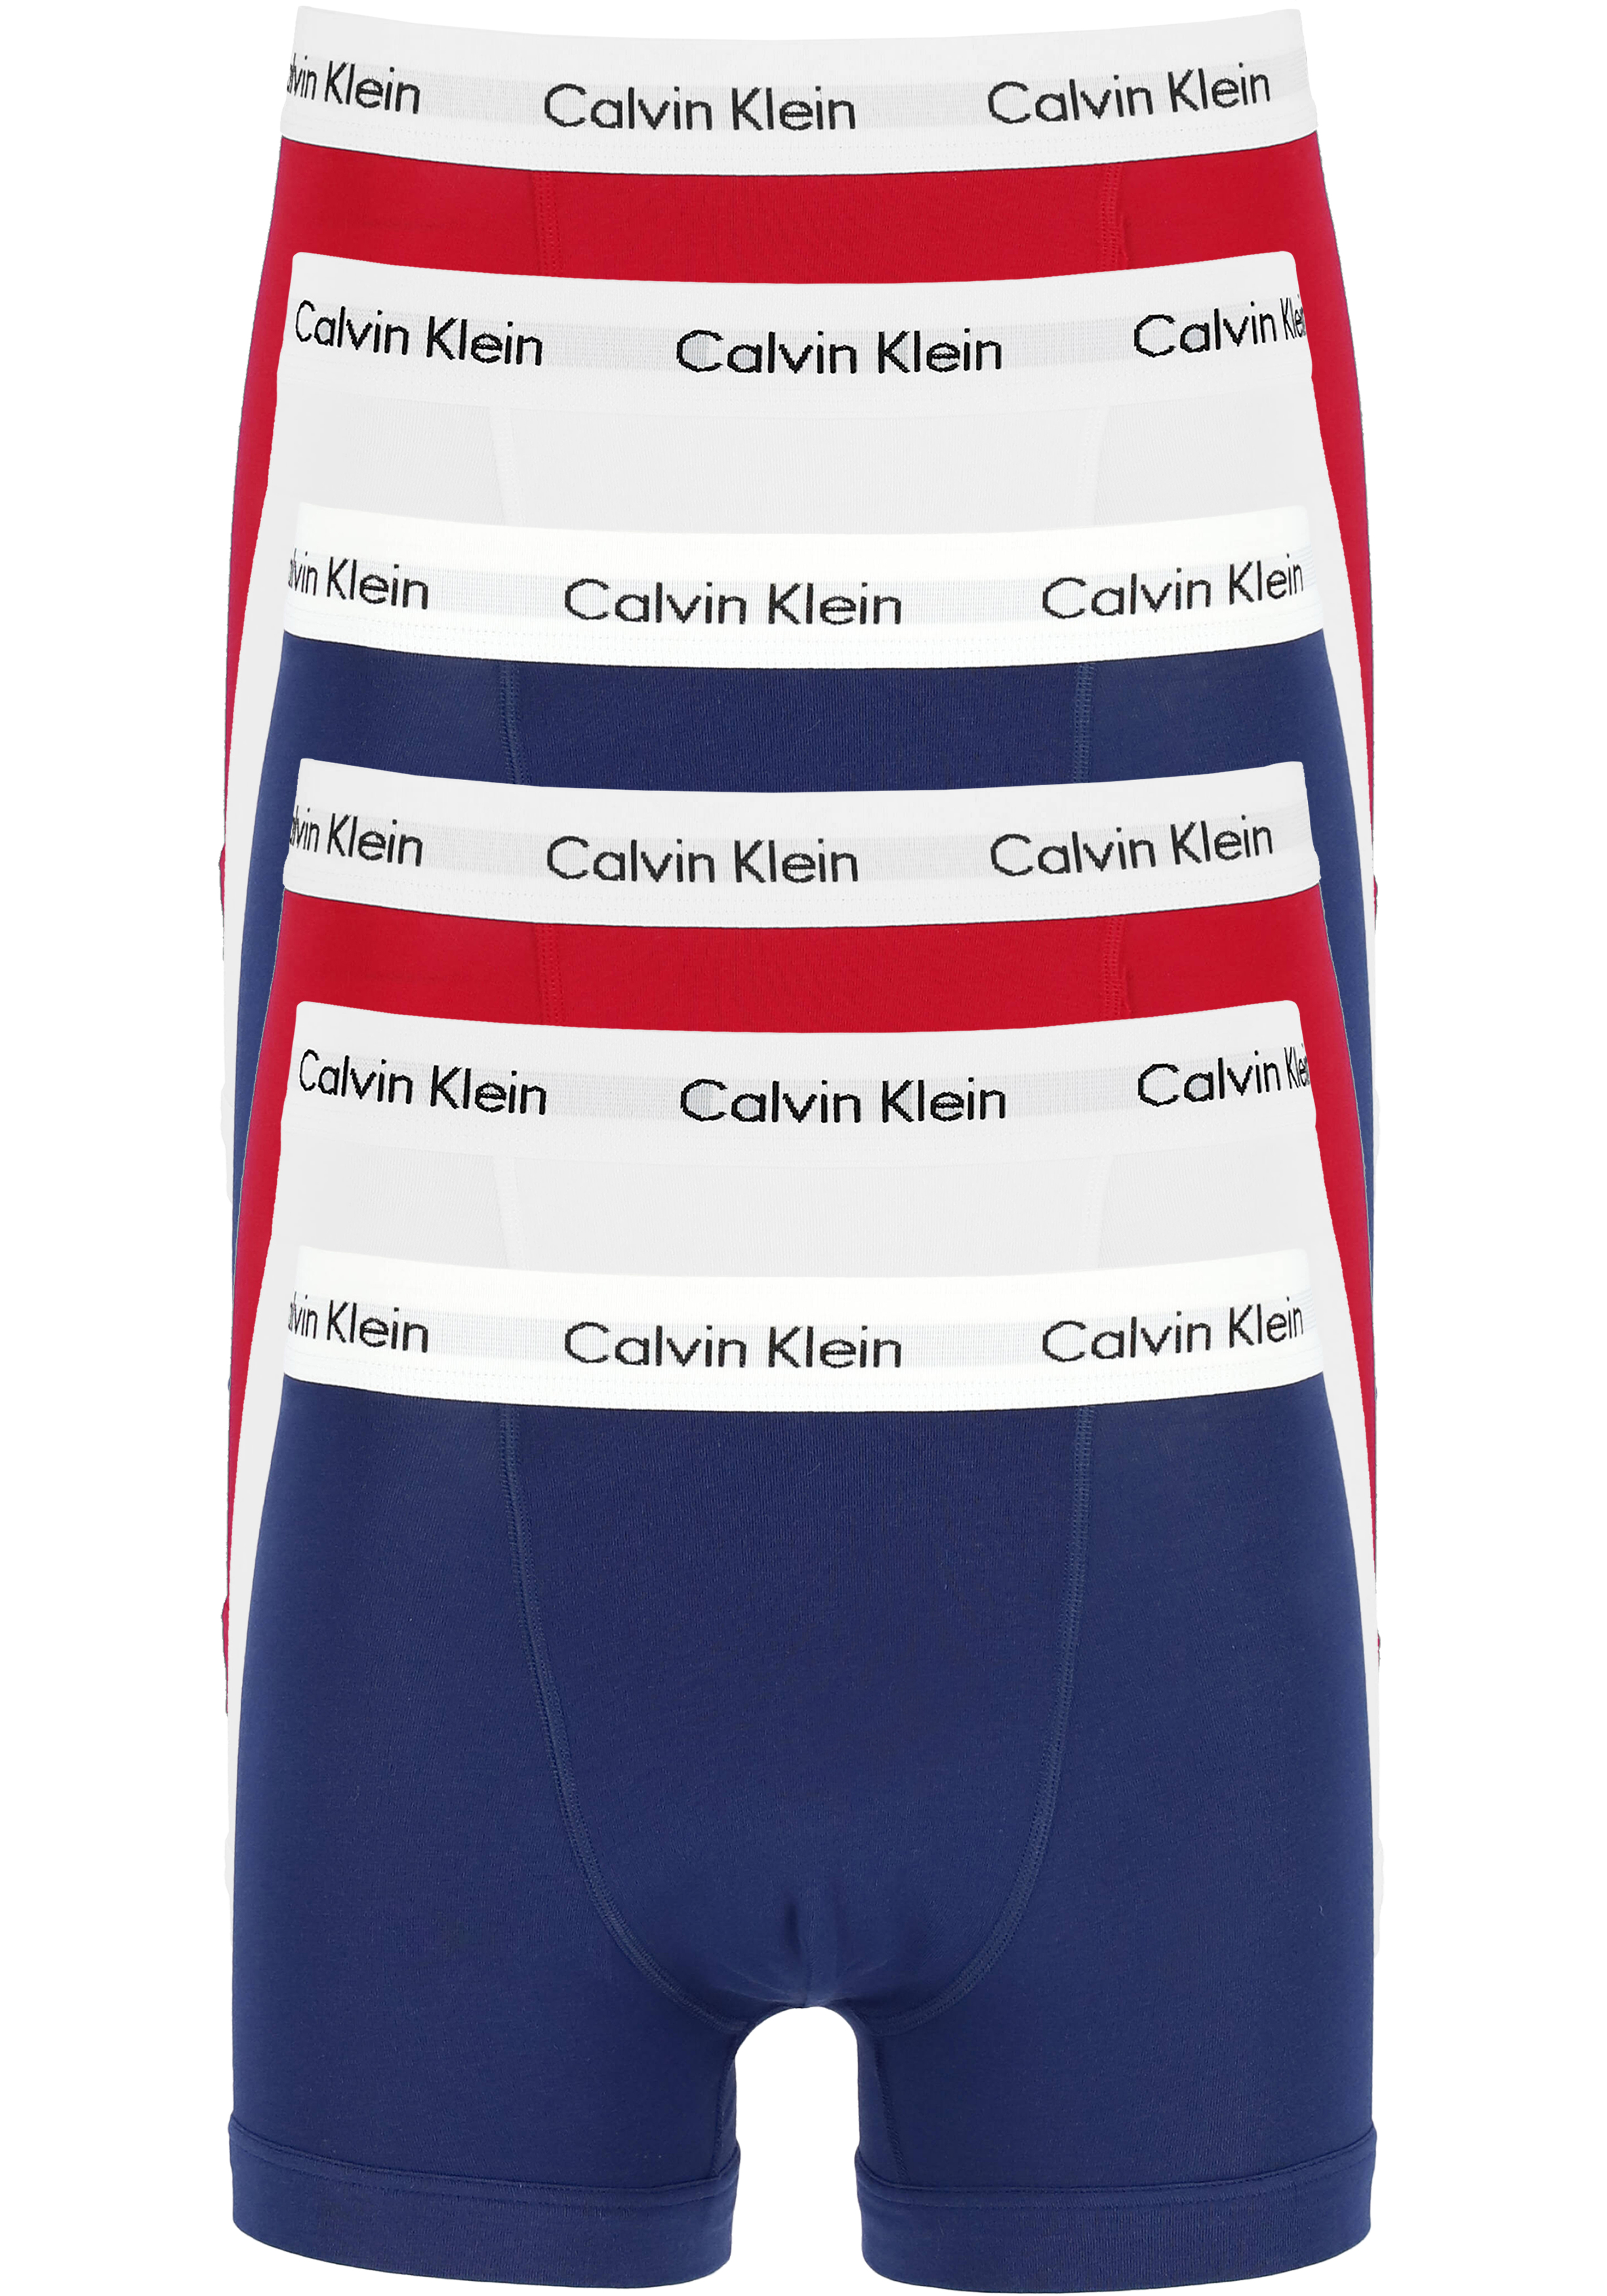 metriek Gemiddeld aanbidden Actie 6-pack: Calvin Klein trunks, heren boxers normale lengte, rood,... -  Shop de nieuwste voorjaarsmode